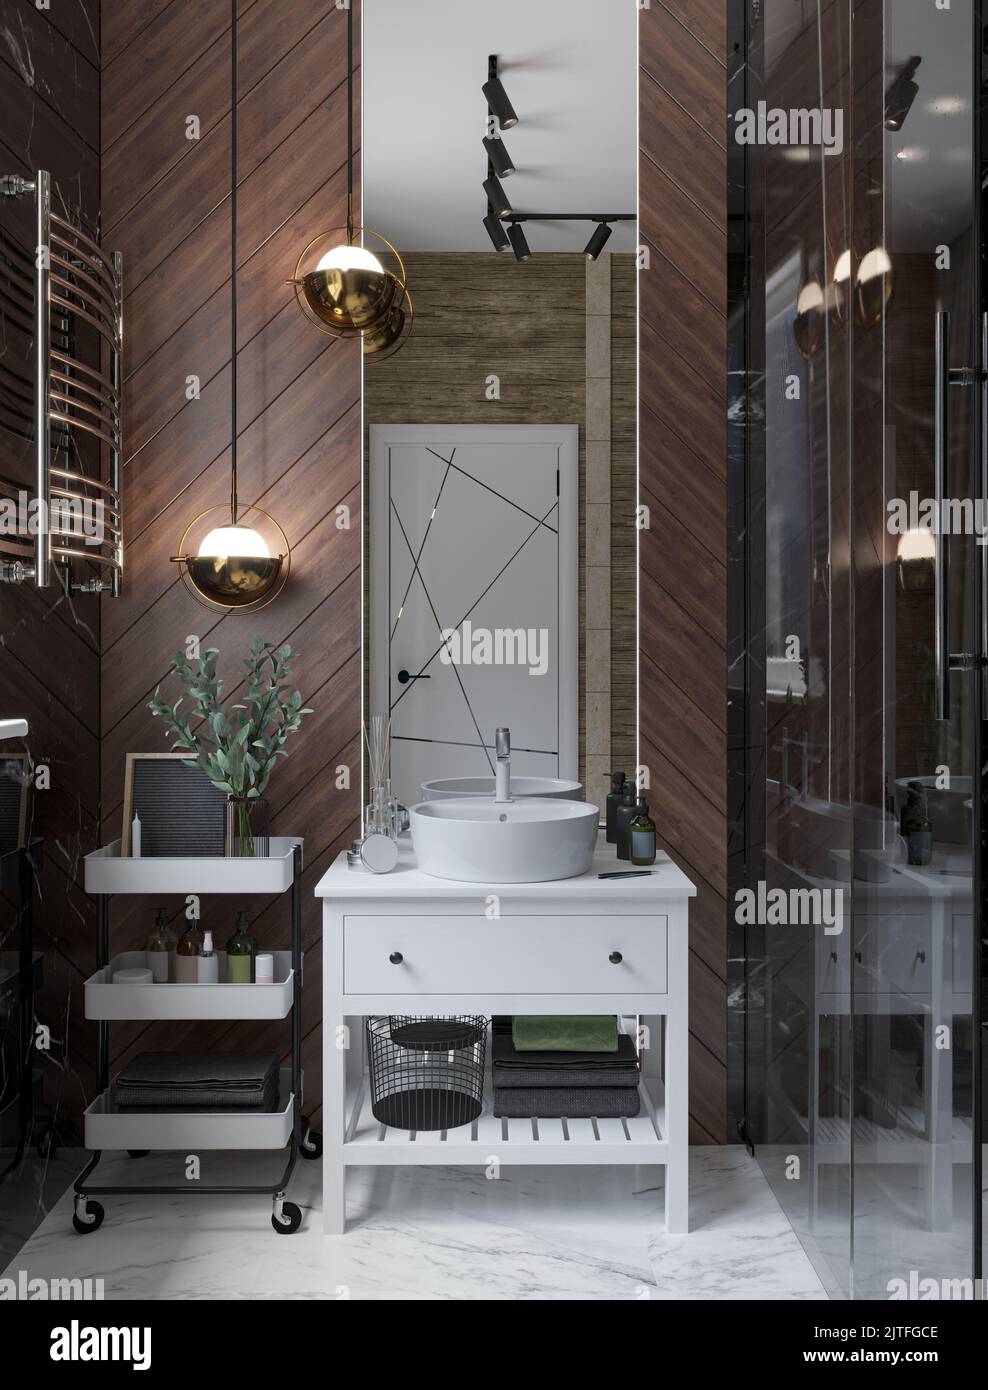 3D Abbildung. Dunkles, modernes Badezimmer mit Toilette und Dusche, Oberflächen aus schwarzem und weißem Marmor, Sandsteinmauerwerk. Raupenlichter, Anhänger, Duschkabine Stockfoto